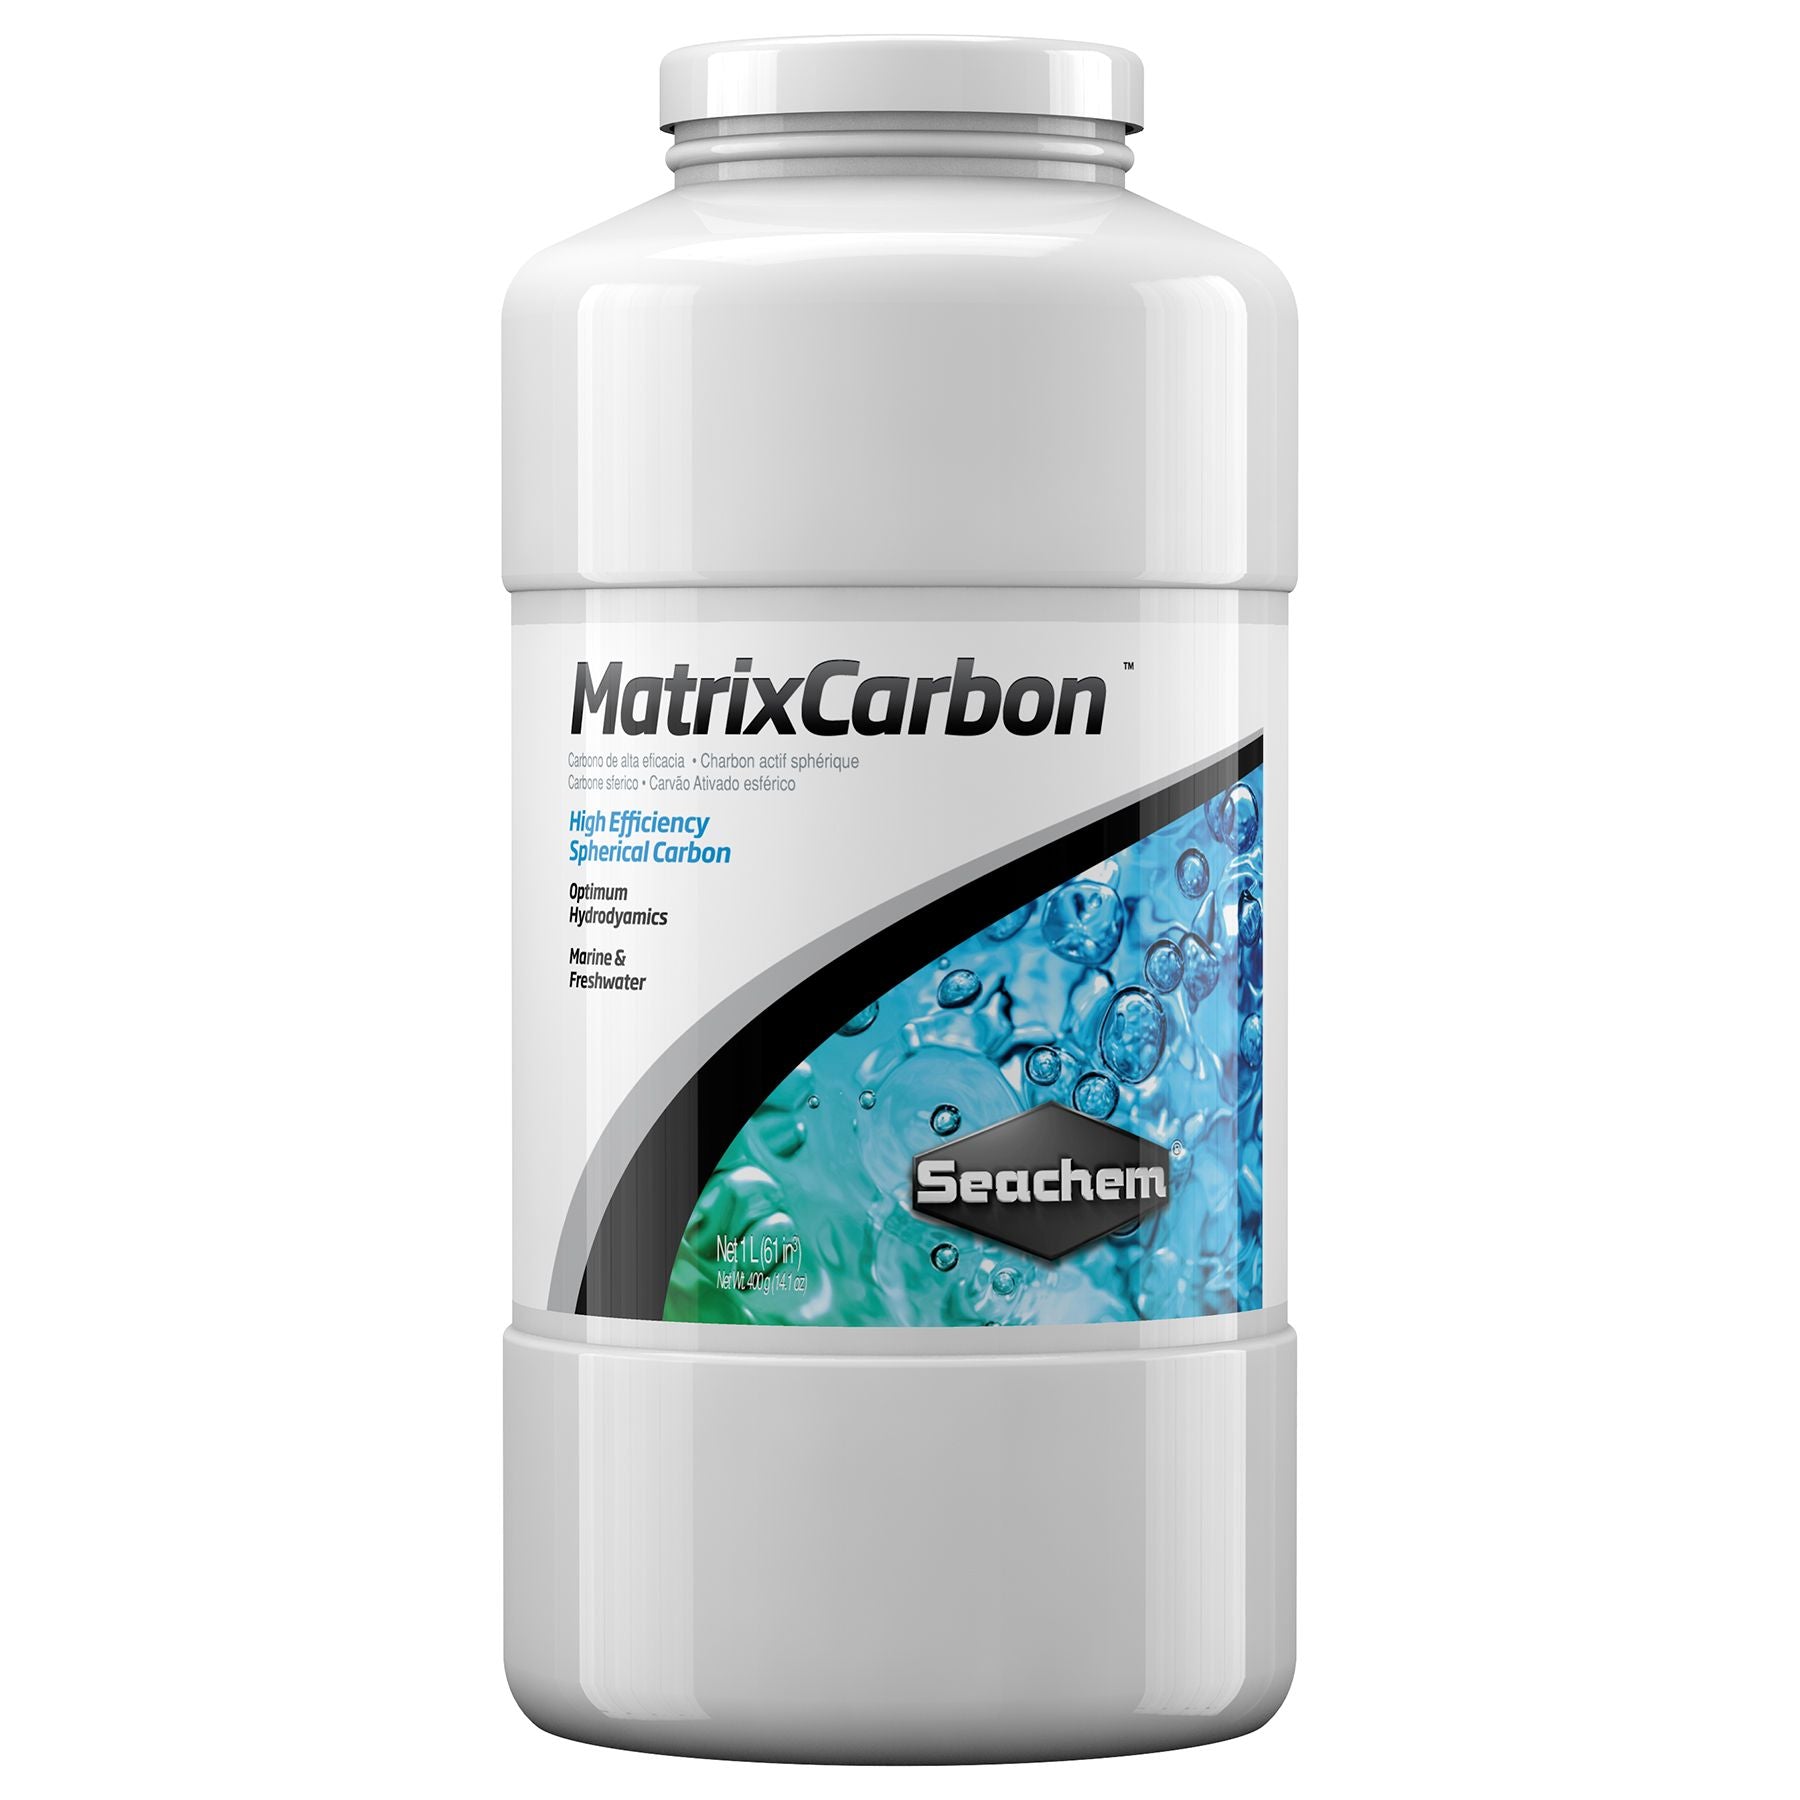 Seachem MatrixCarbon - Aquatia